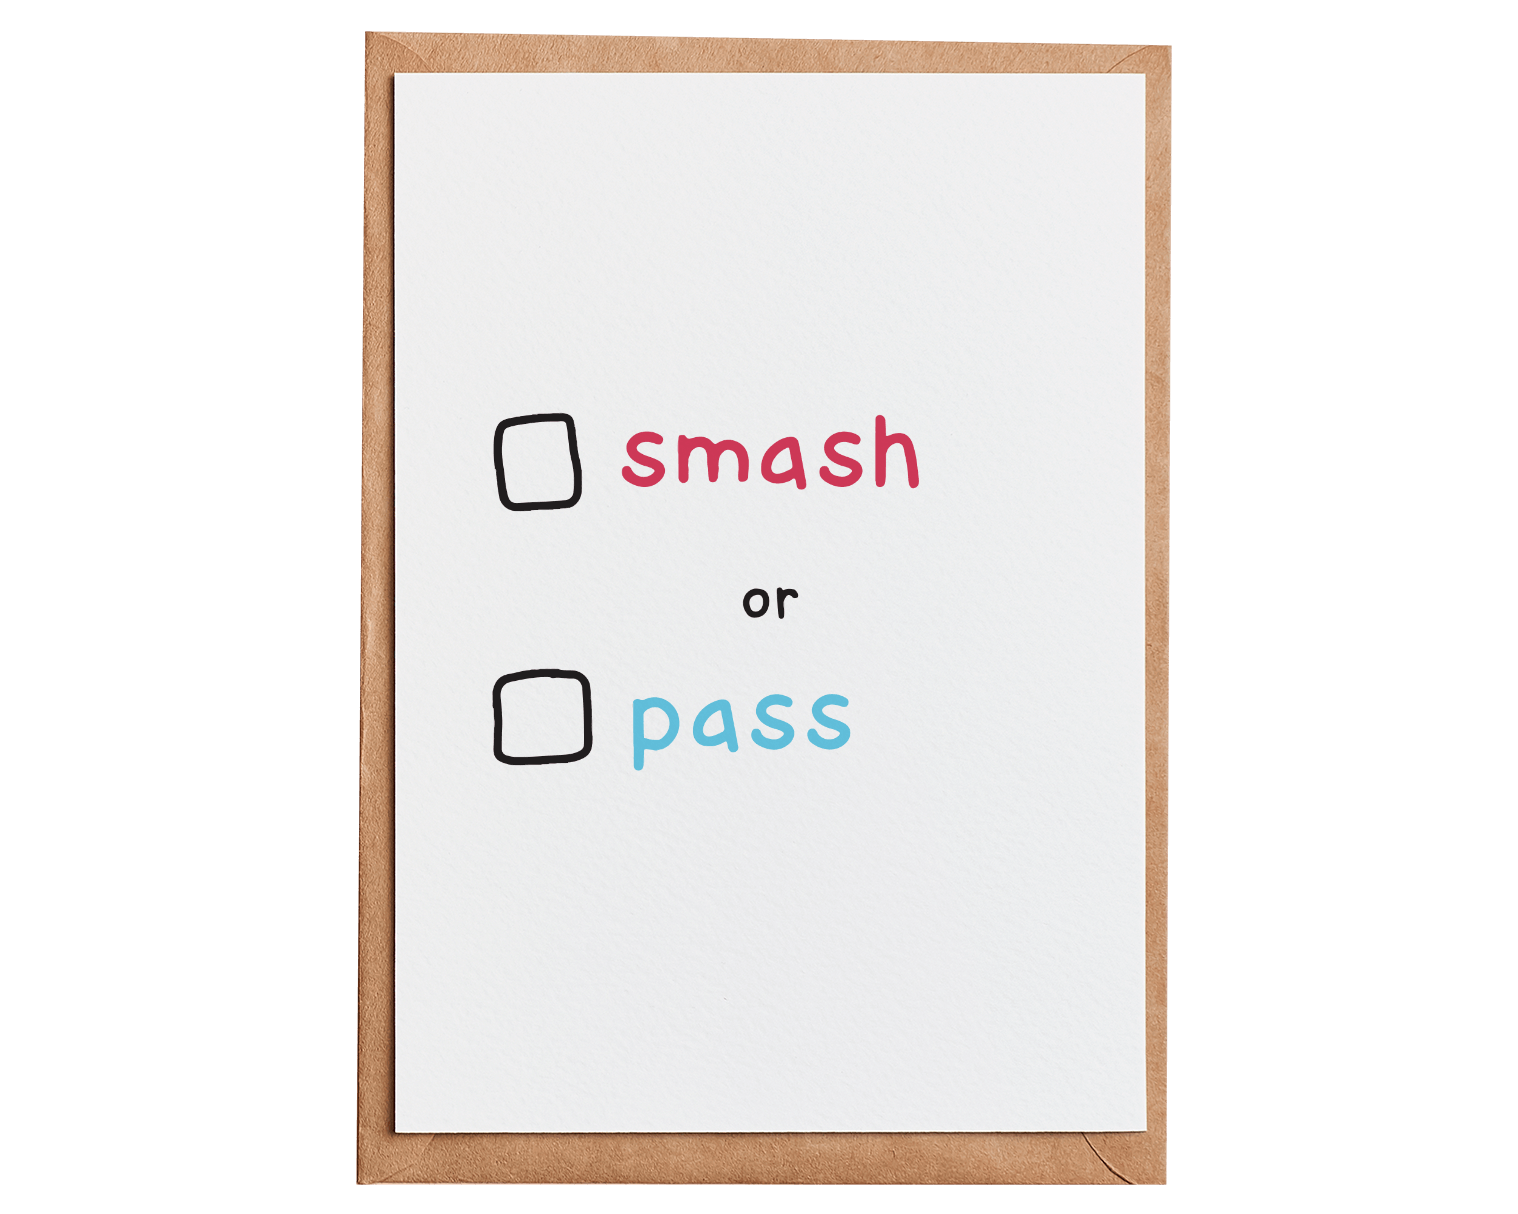 Smash or pass